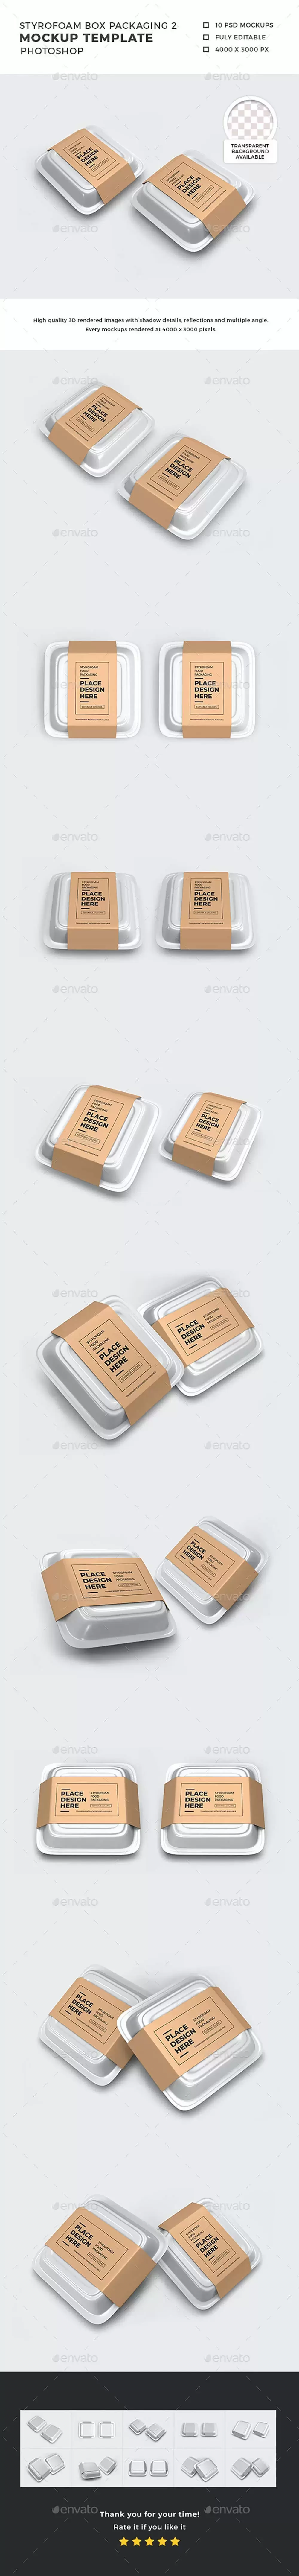 泡沫塑料食品外卖盒包装样机模板 (psd)免费下载插图